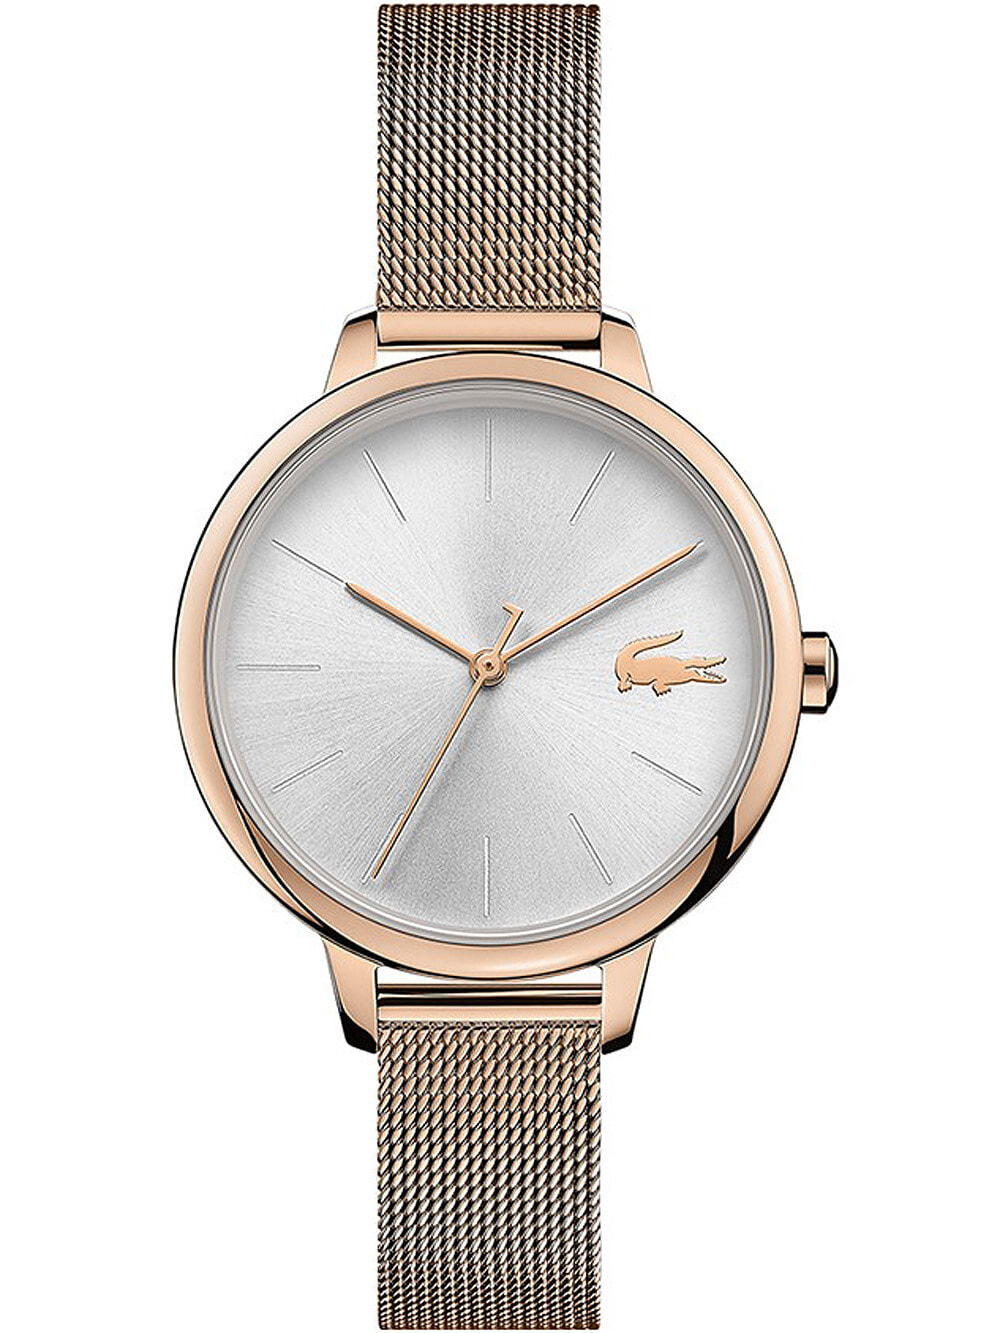 Женские наручные кварцевые часы Lacoste ремешок из нержавеющей стали.